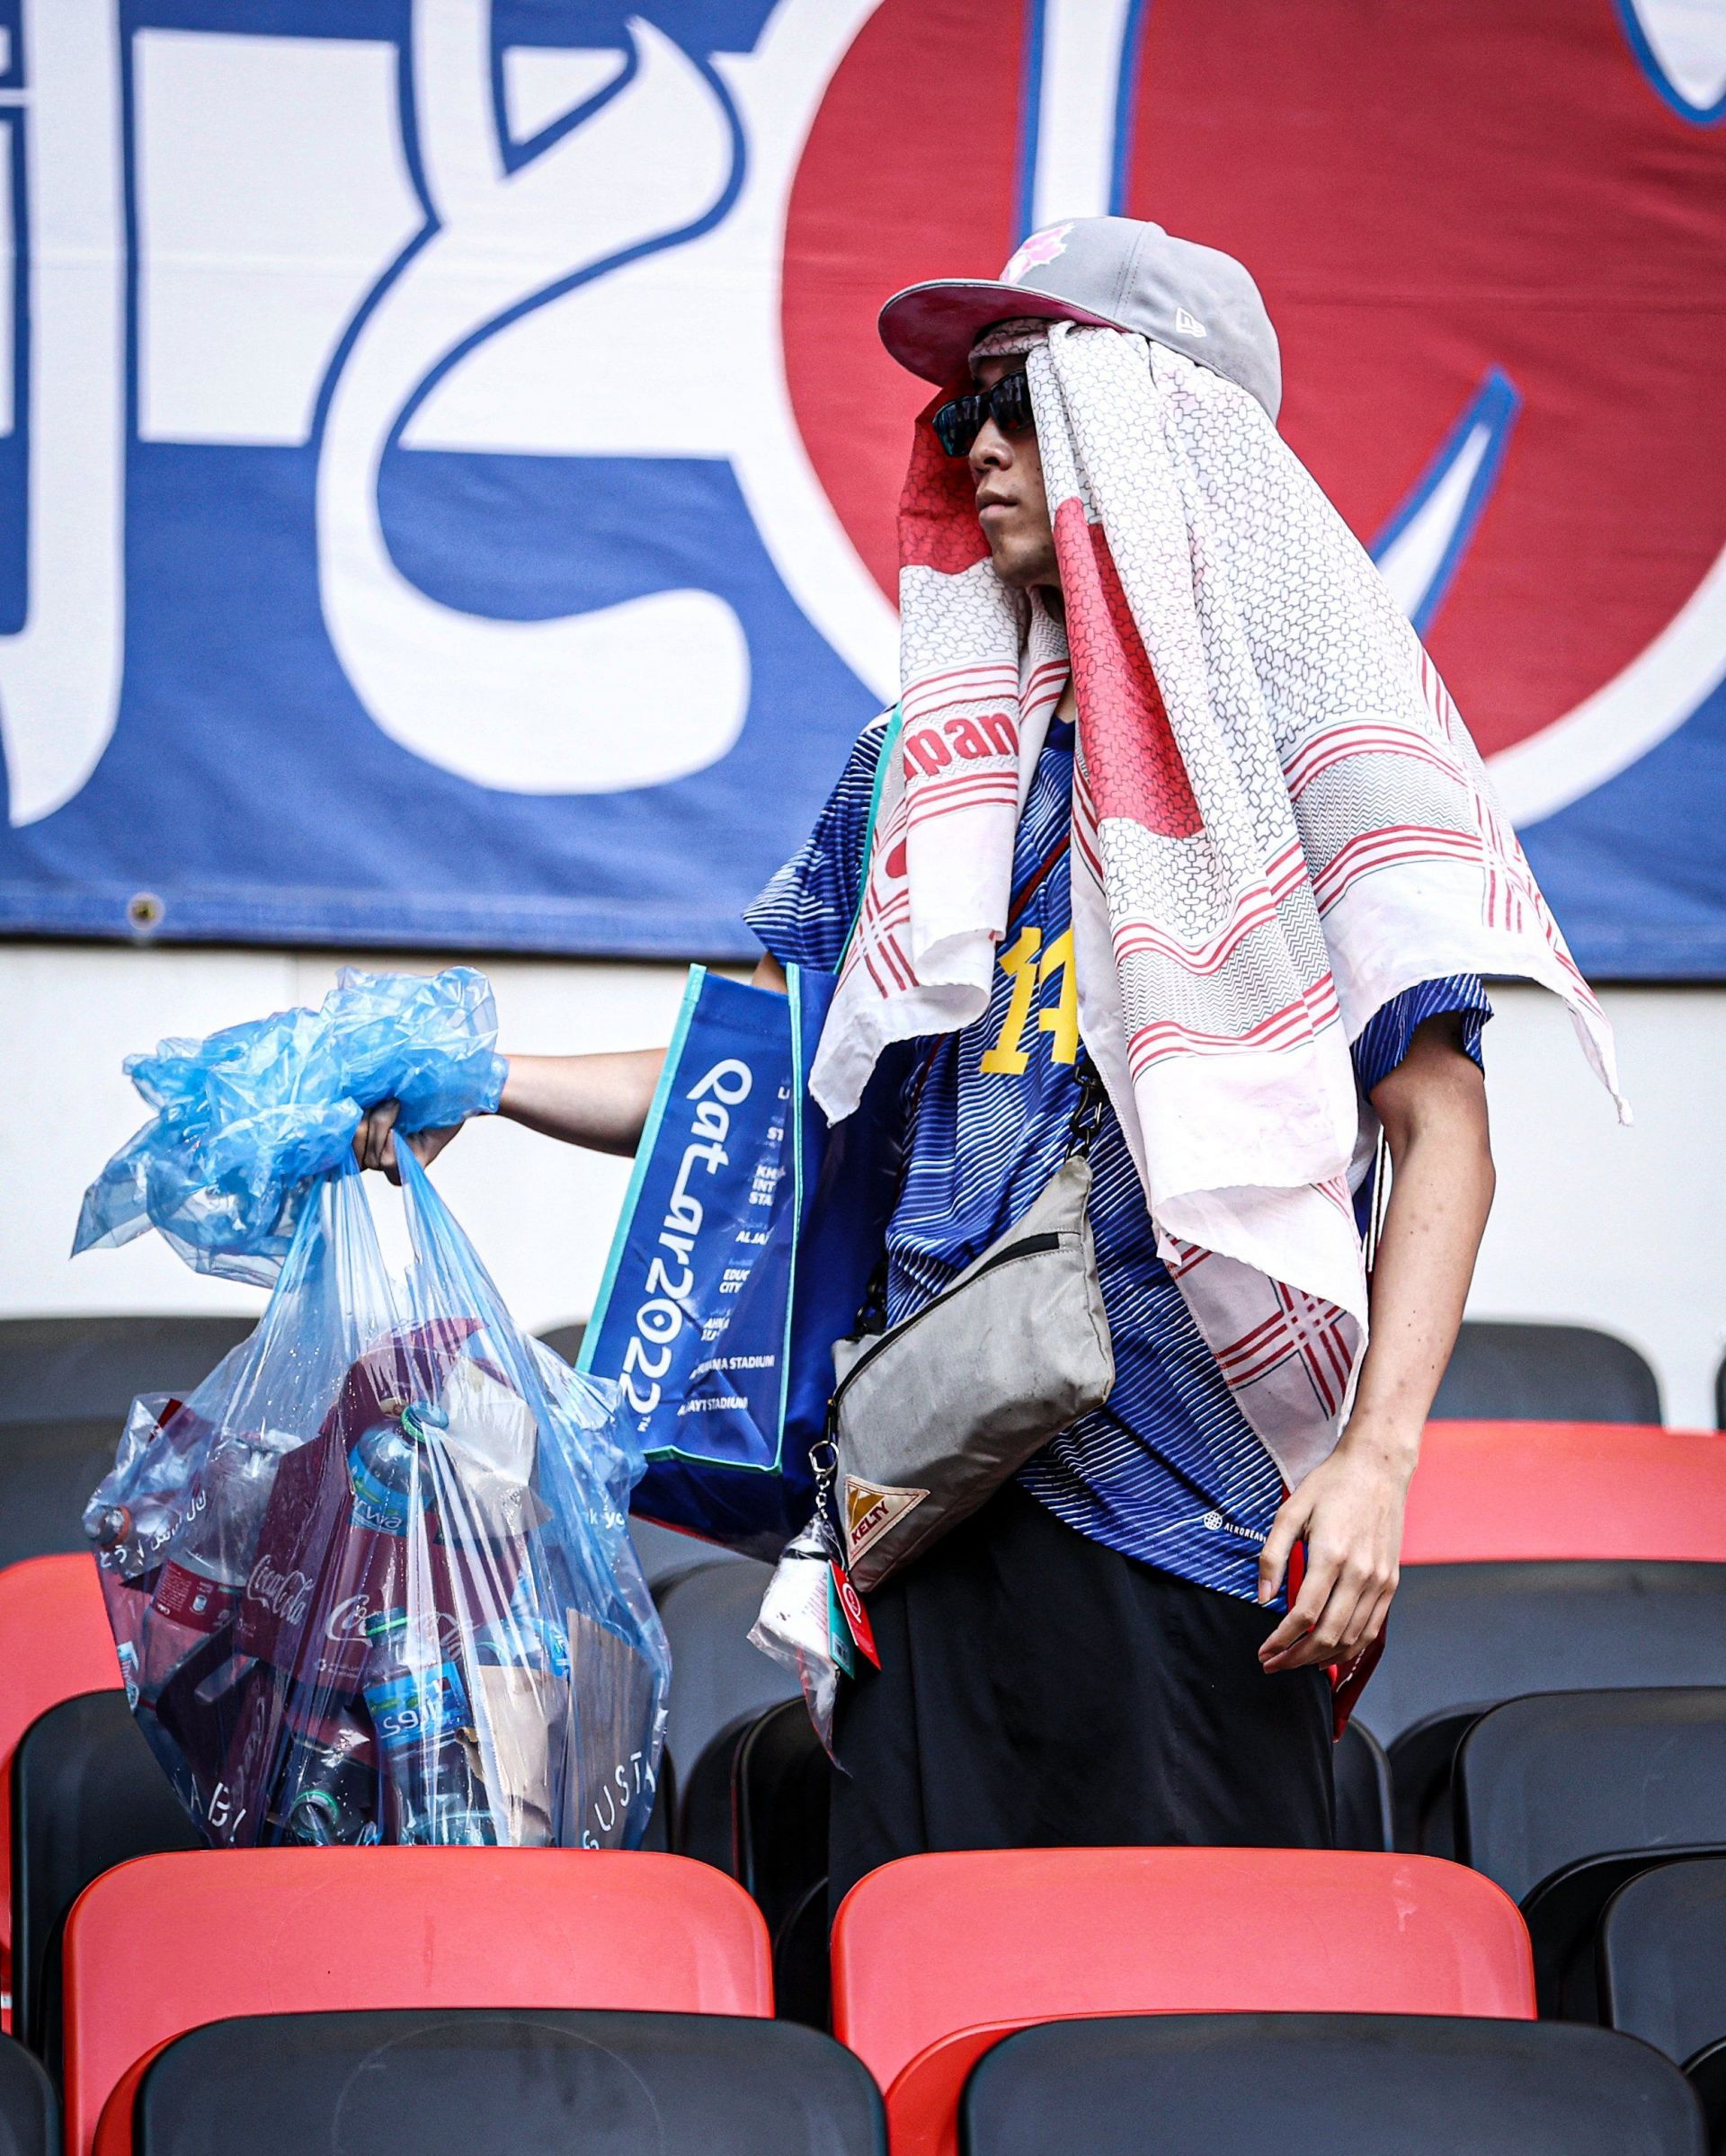 कोस्टा रिका से हार के बावजूद जापान के फैंस ने स्टेडियम में रहकर सफाई की।